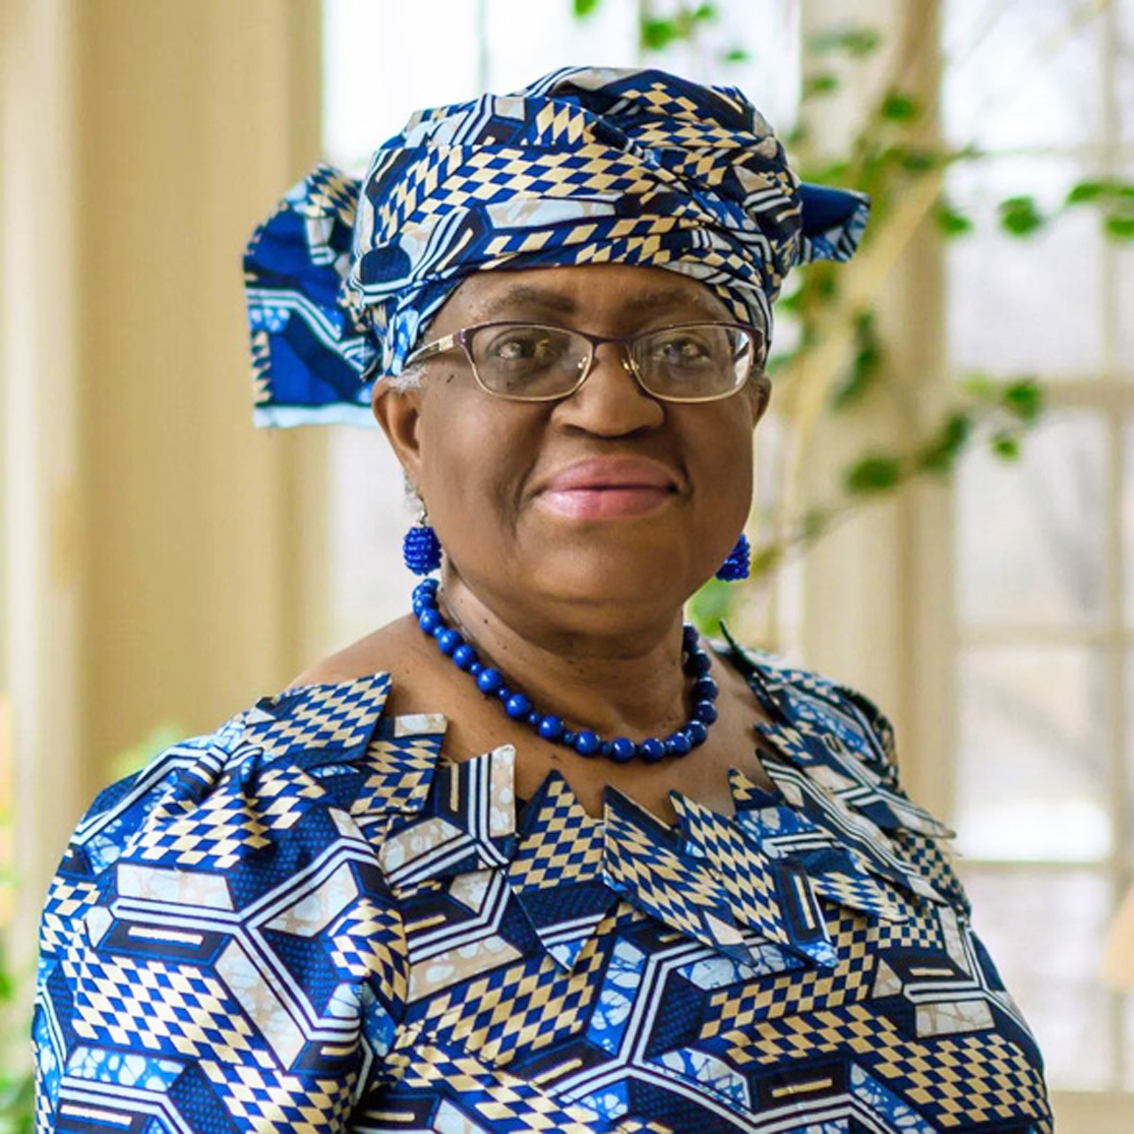 Bà Ngozi Okonjo-Iweala, phụ nữ đầu tiên giữ ghế Tổng Giám đốc Tổ chức Thương mại Thế giới (WTO)